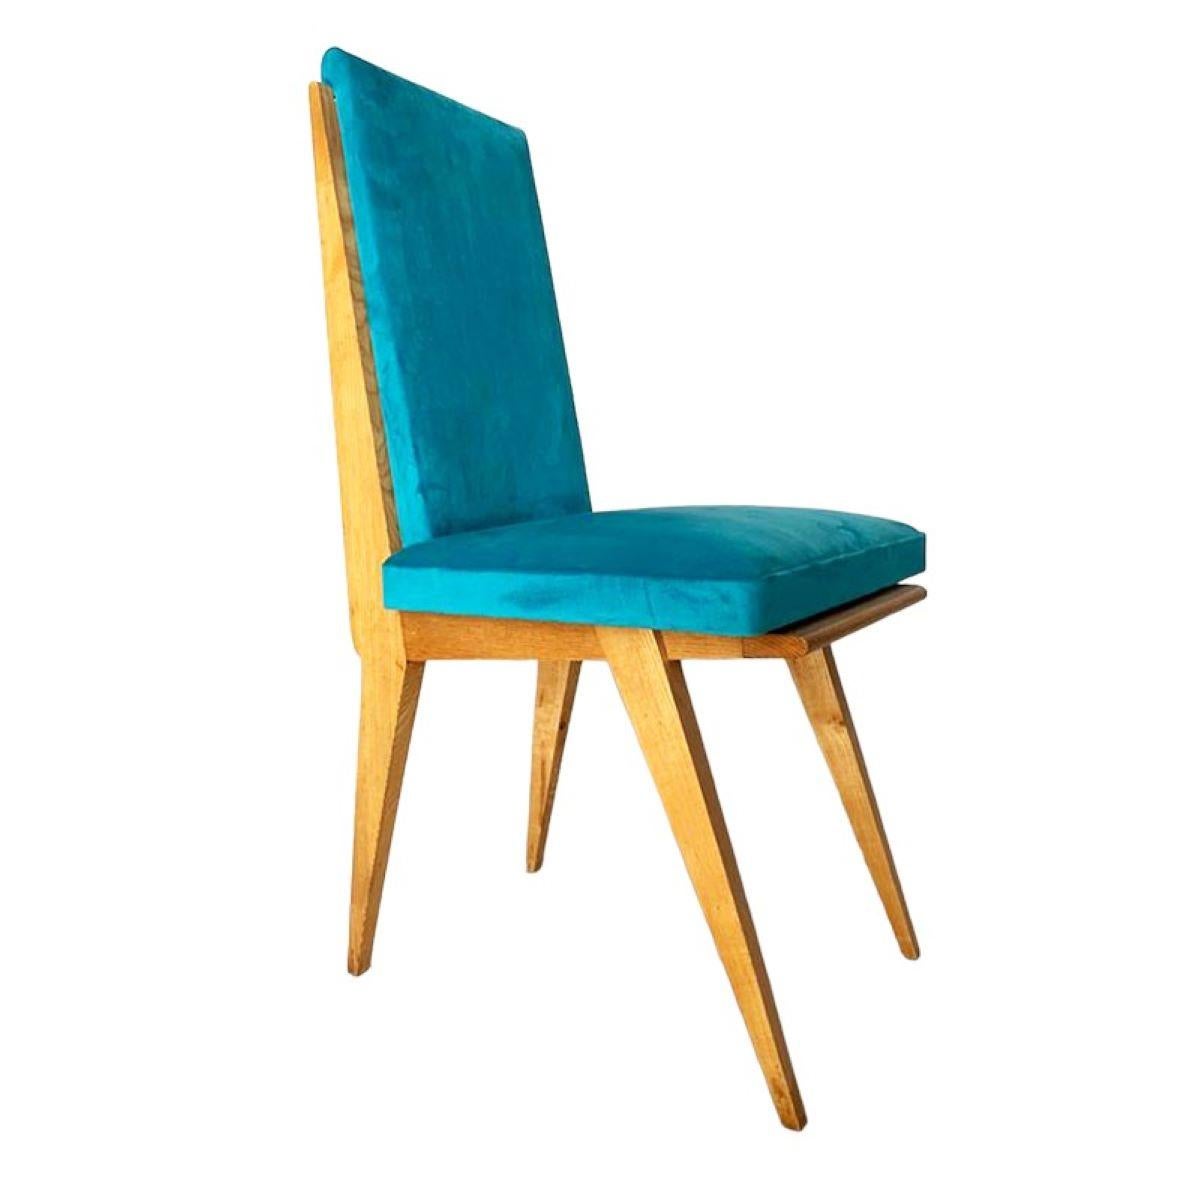 CINCO sillas Midcentury
Conjunto de CINCO sillas en fresno, tapizadas en terciopelo de algodón.
Francia.
Años 50.
MEDIDAS: 92 X 48 X 45 cm
Alto: 92 cm.
Largo: 48 cm.
Ancho: 45 cm.
